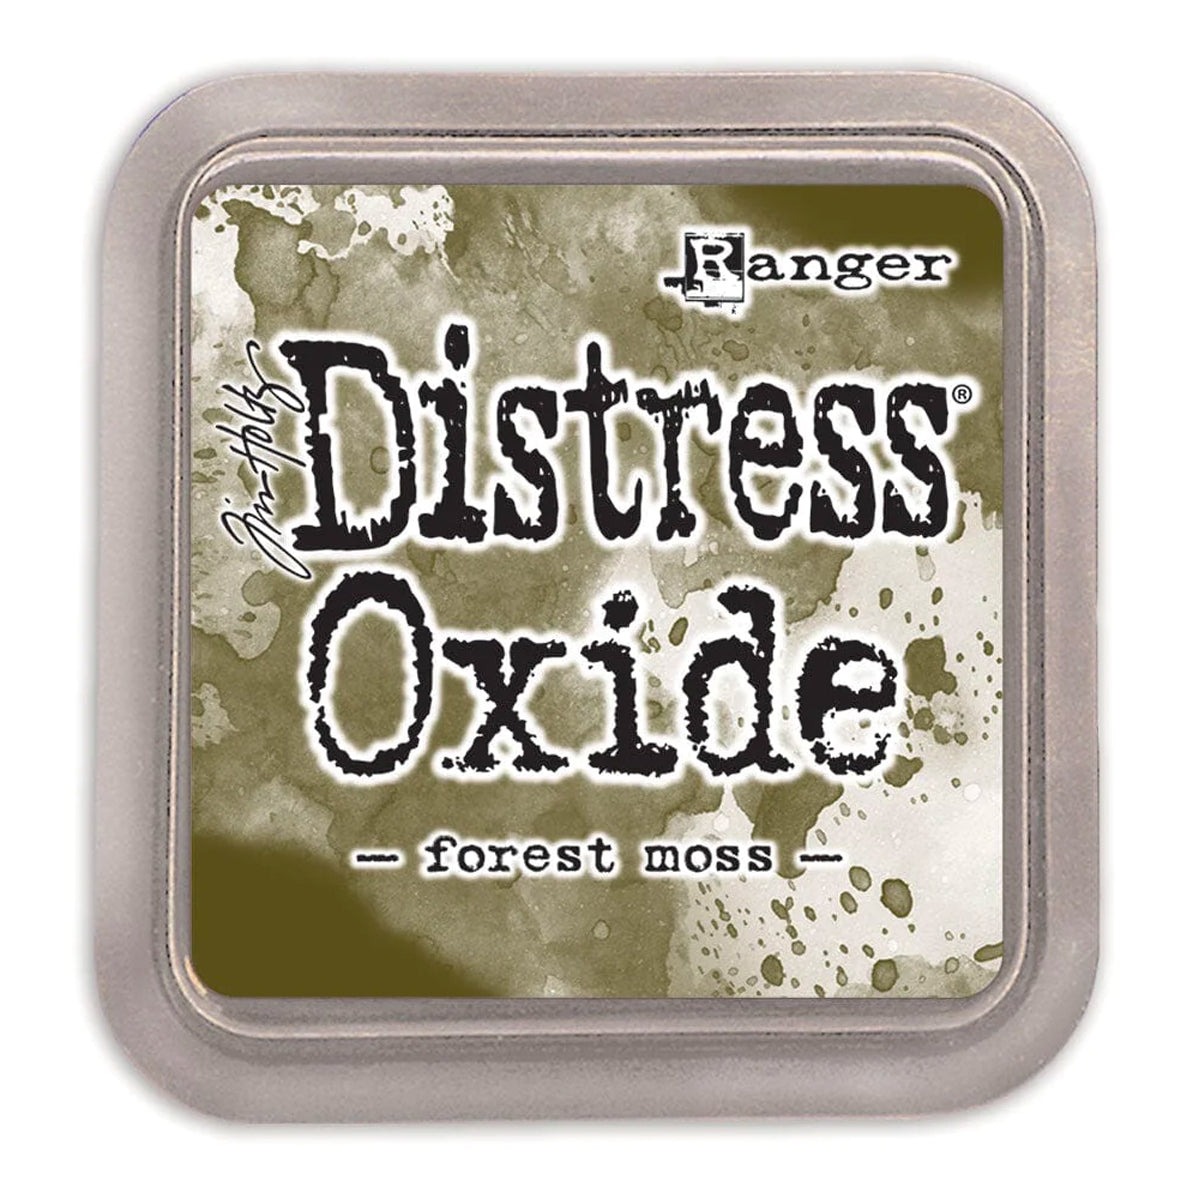 Tim Holtz Distress Oxide Ink Pad - Forest Moss